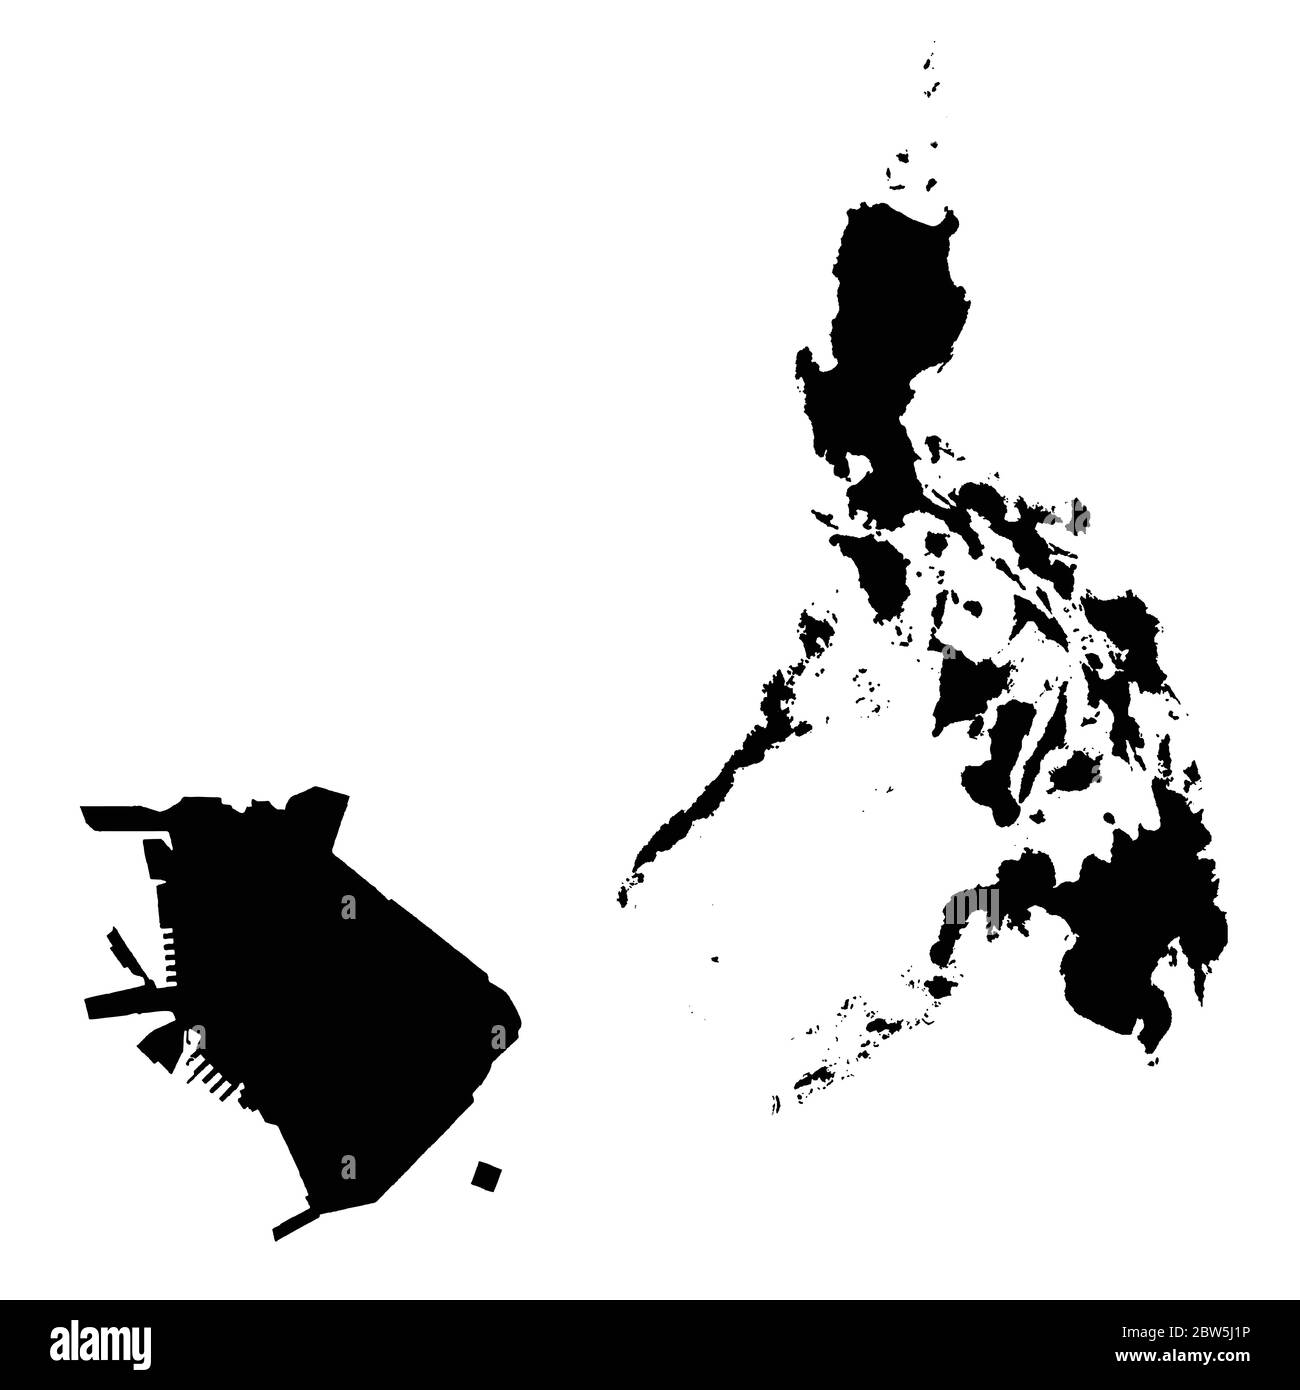 Vektorkarte Philippinen und Manila. Land und Hauptstadt. Isolierte Vektorgrafik. Schwarz auf weißem Hintergrund. EPS 10-Abbildung. Stock Vektor